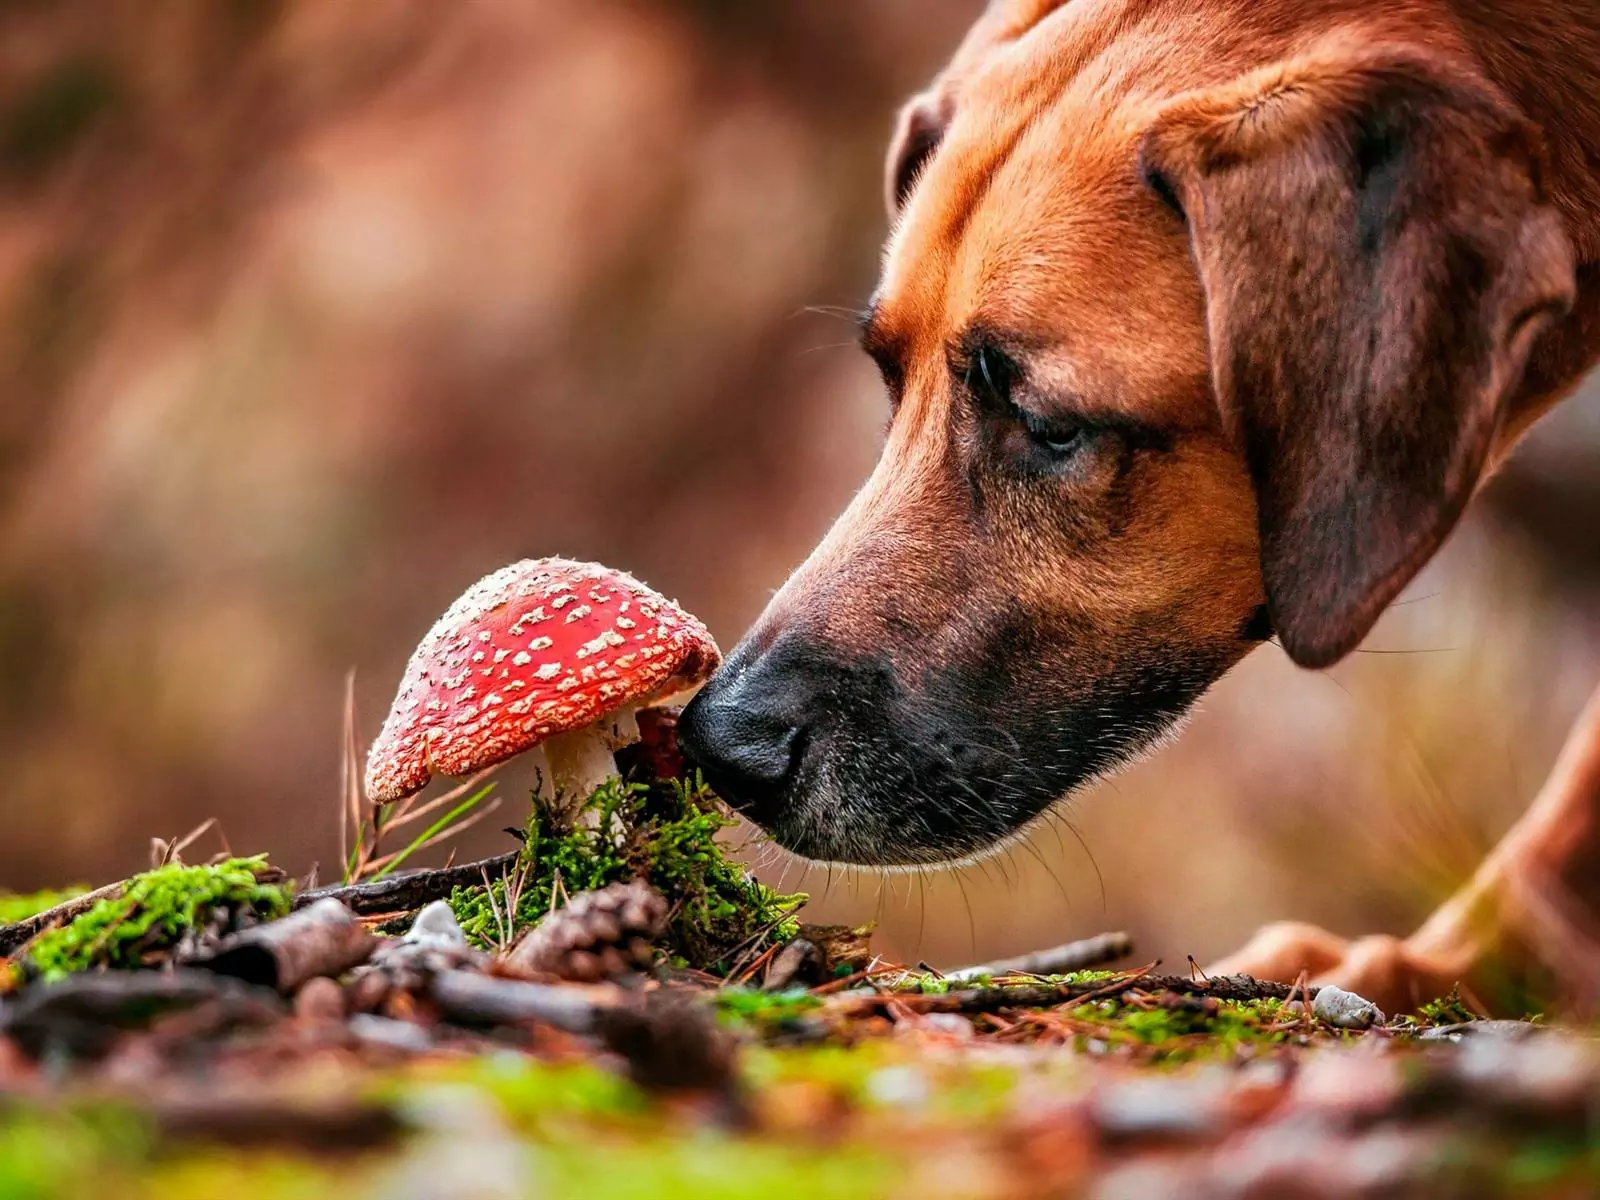 Os cães podem comer cogumelos? Qual é a nutrição de dar cogumelos aos cães?